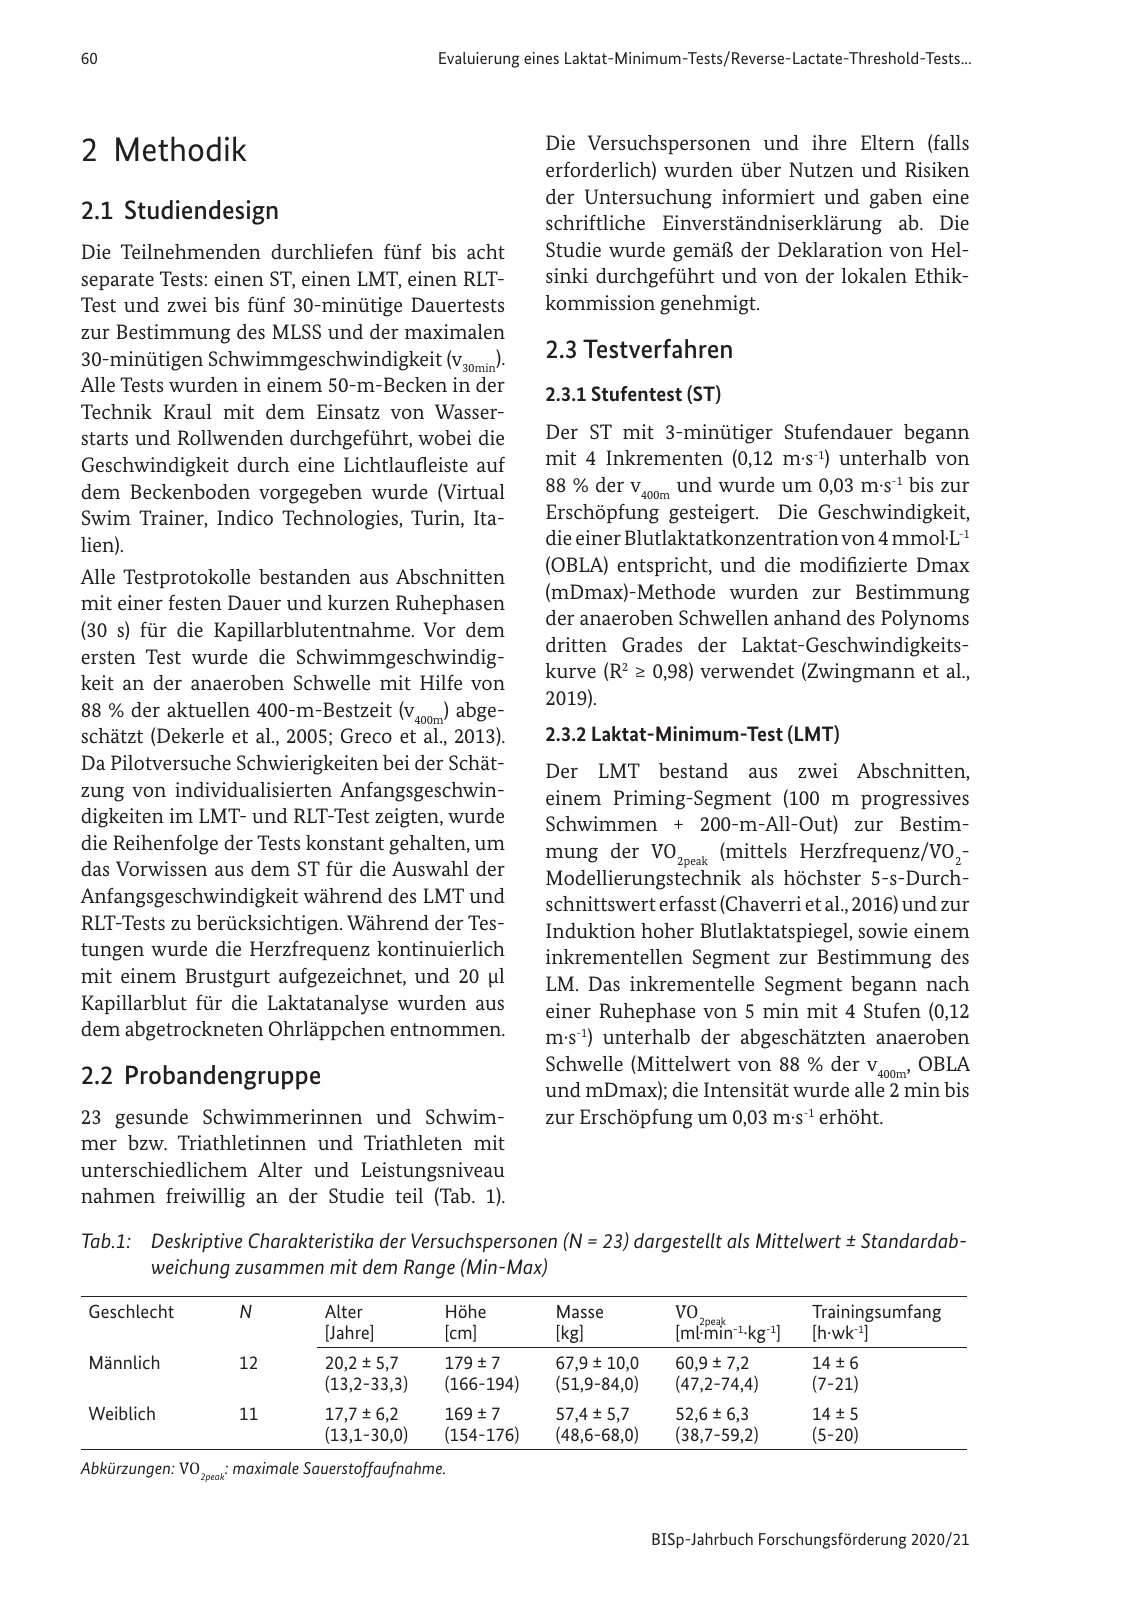 Vorschau BISp-Jahrbuch 2020/21 Seite 62